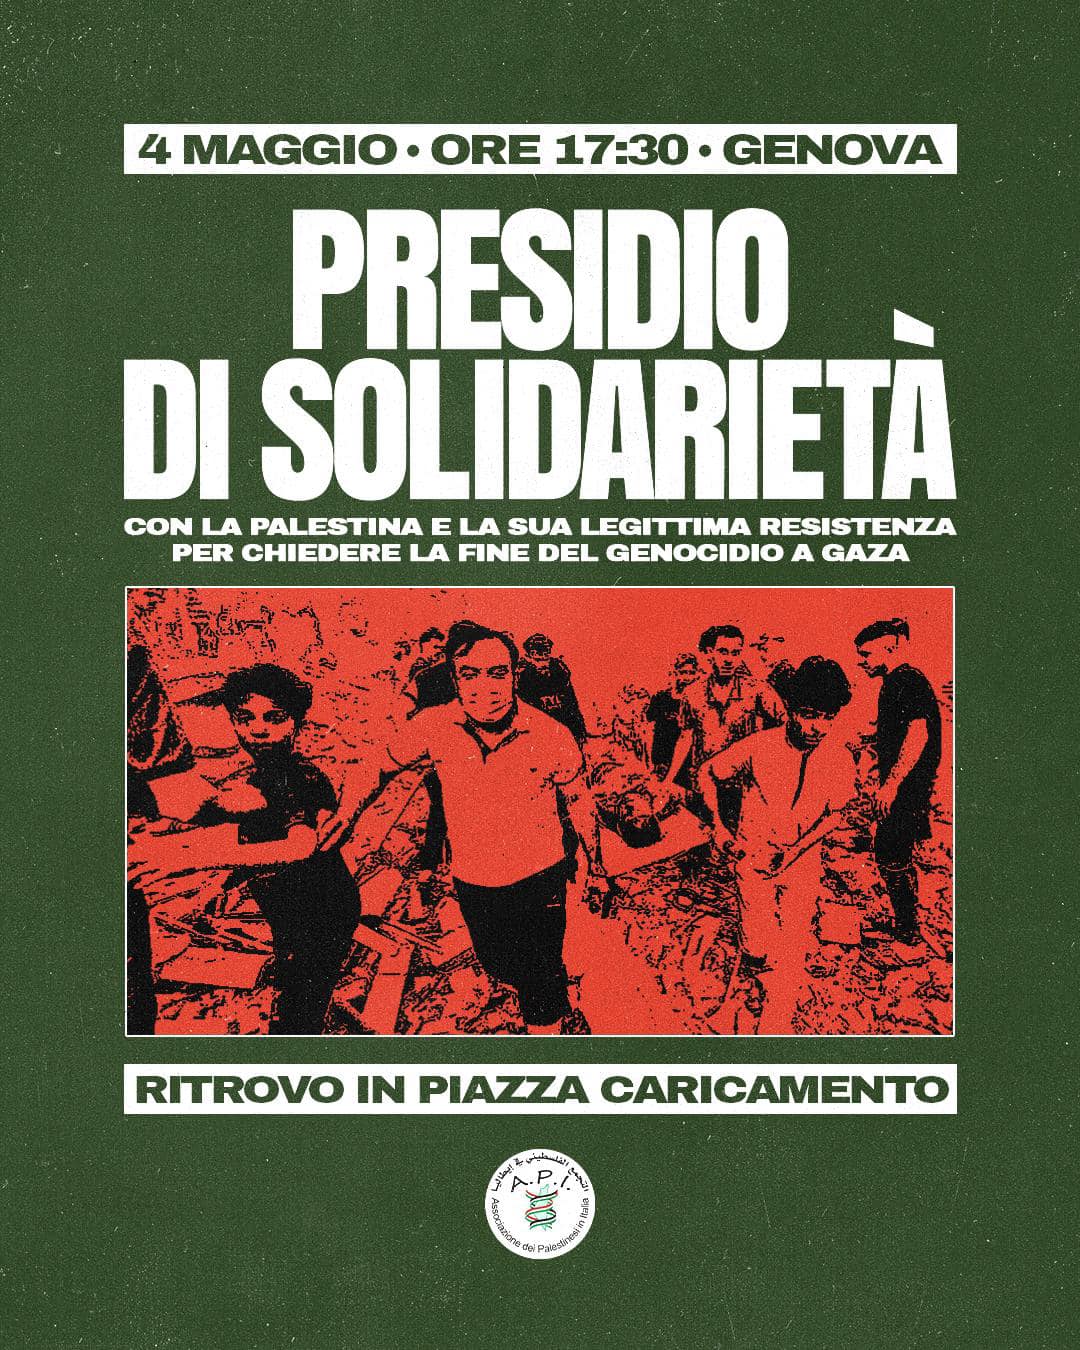 مظاهرة  في مدينة جنوى الايطالية السبت القادم 04-05-2024 نصرة لغزة وفلسطين